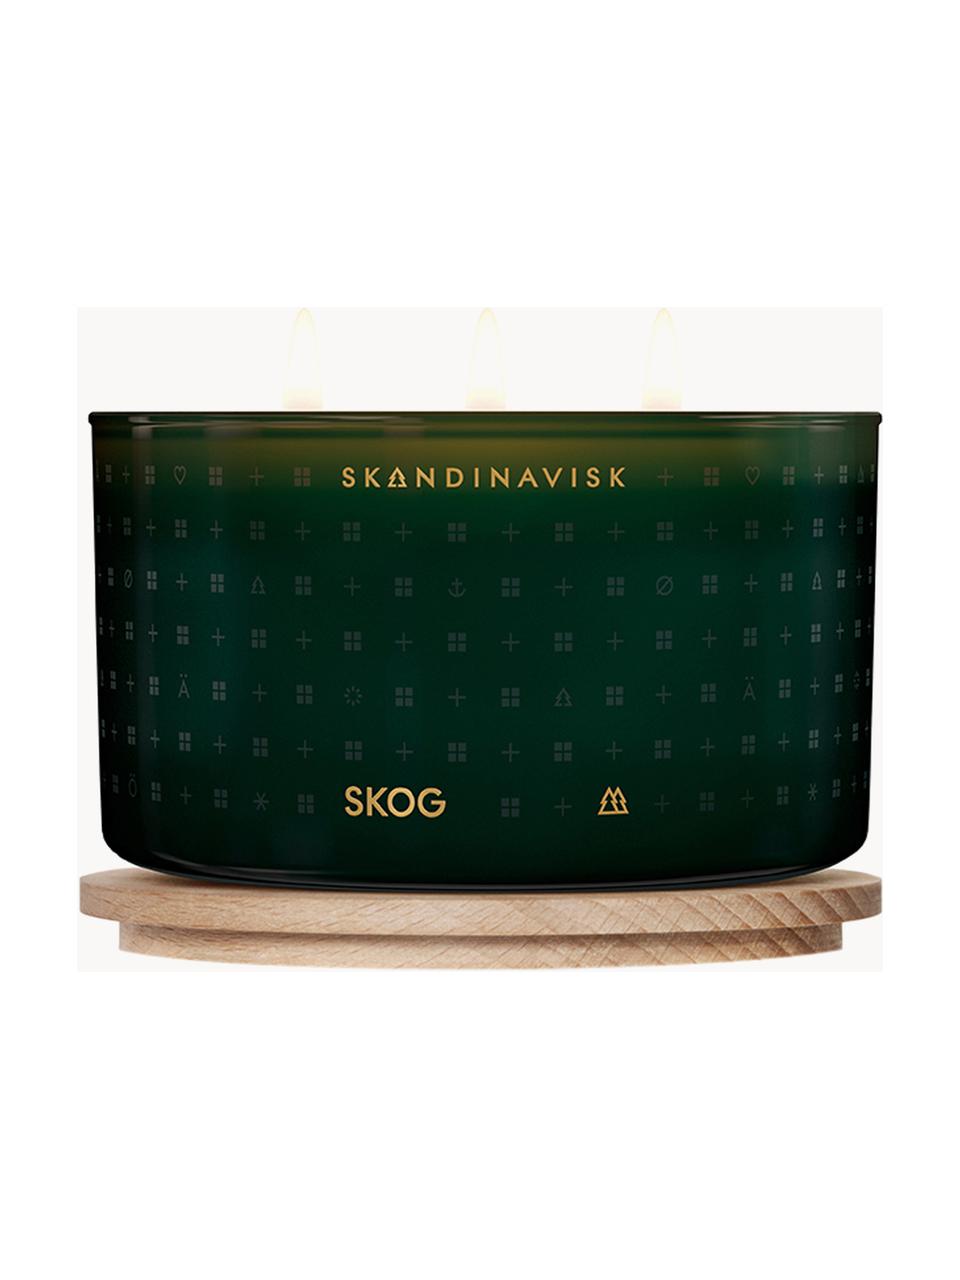 Trojknôtová vonná sviečka Skog (ihličie, šišky, brezová šťava), Ihličie, jedľové šišky, brezová miazga, Ø 14 x V 8 cm